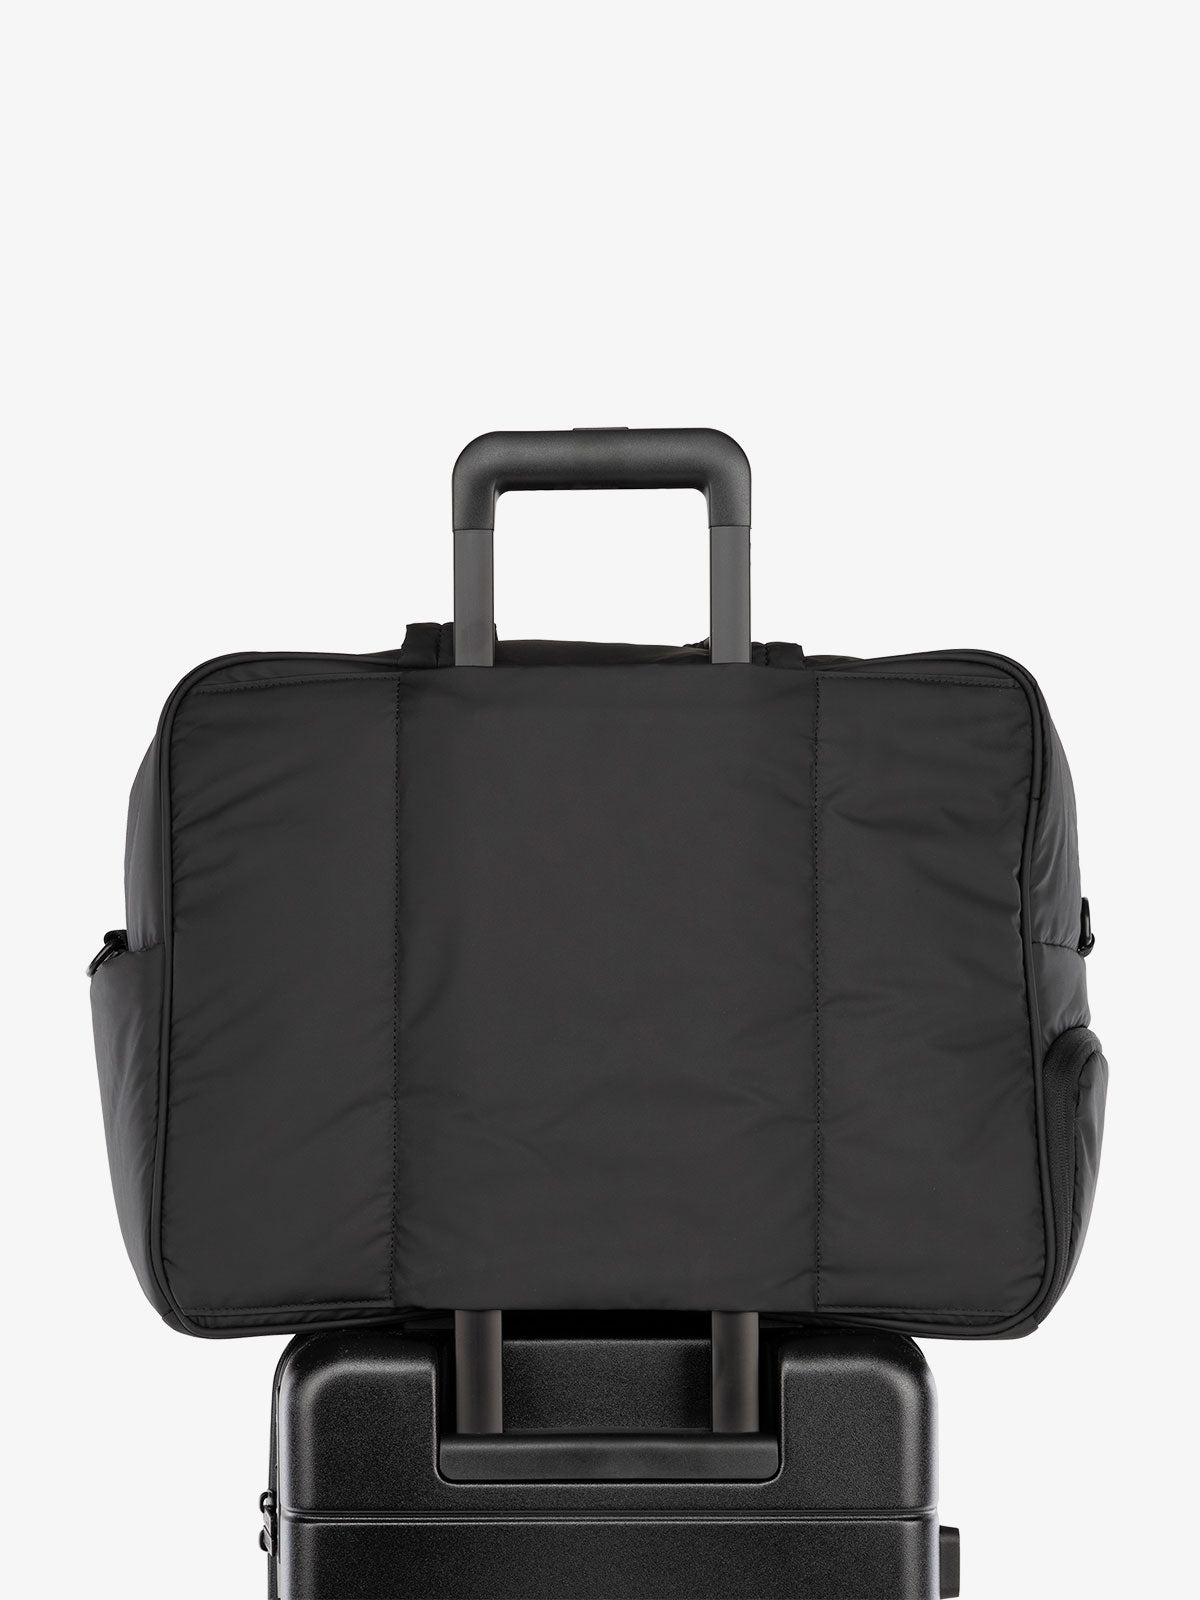 calpak luka large duffel bag personal item｜TikTok Search